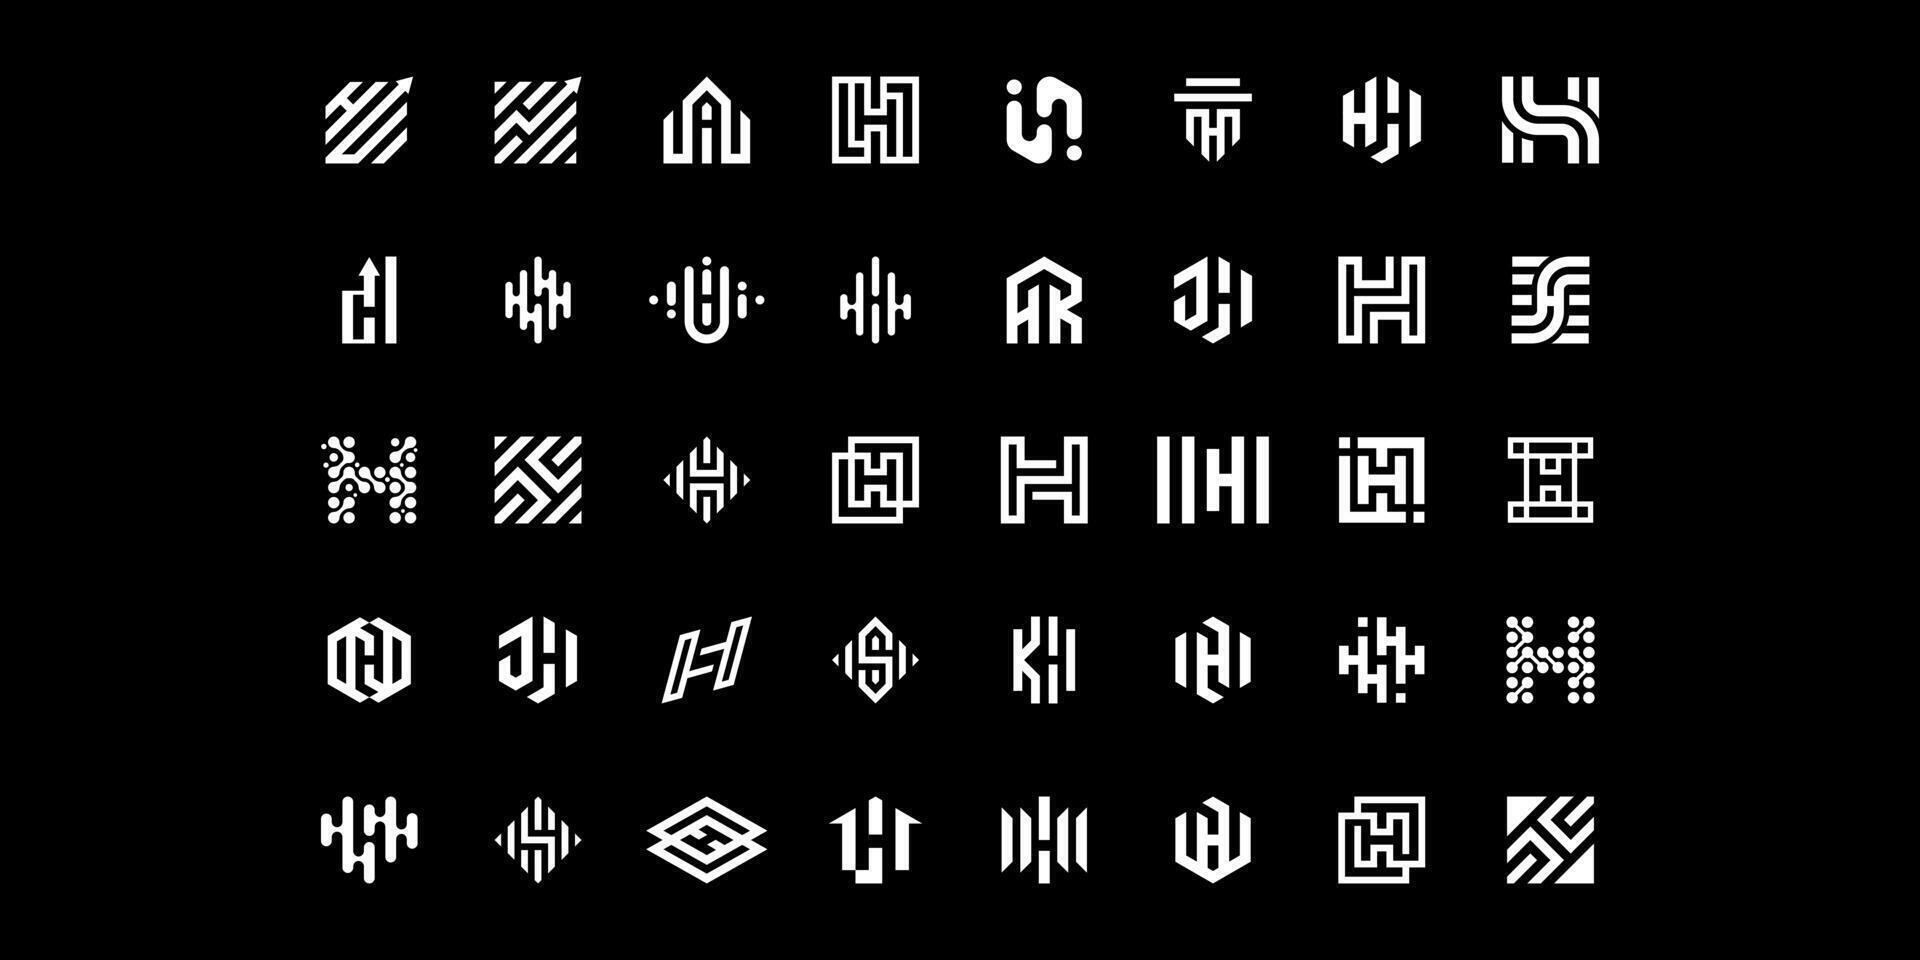 mega logo recopilación, resumen diseño concepto para marca con el inicial letra h vector